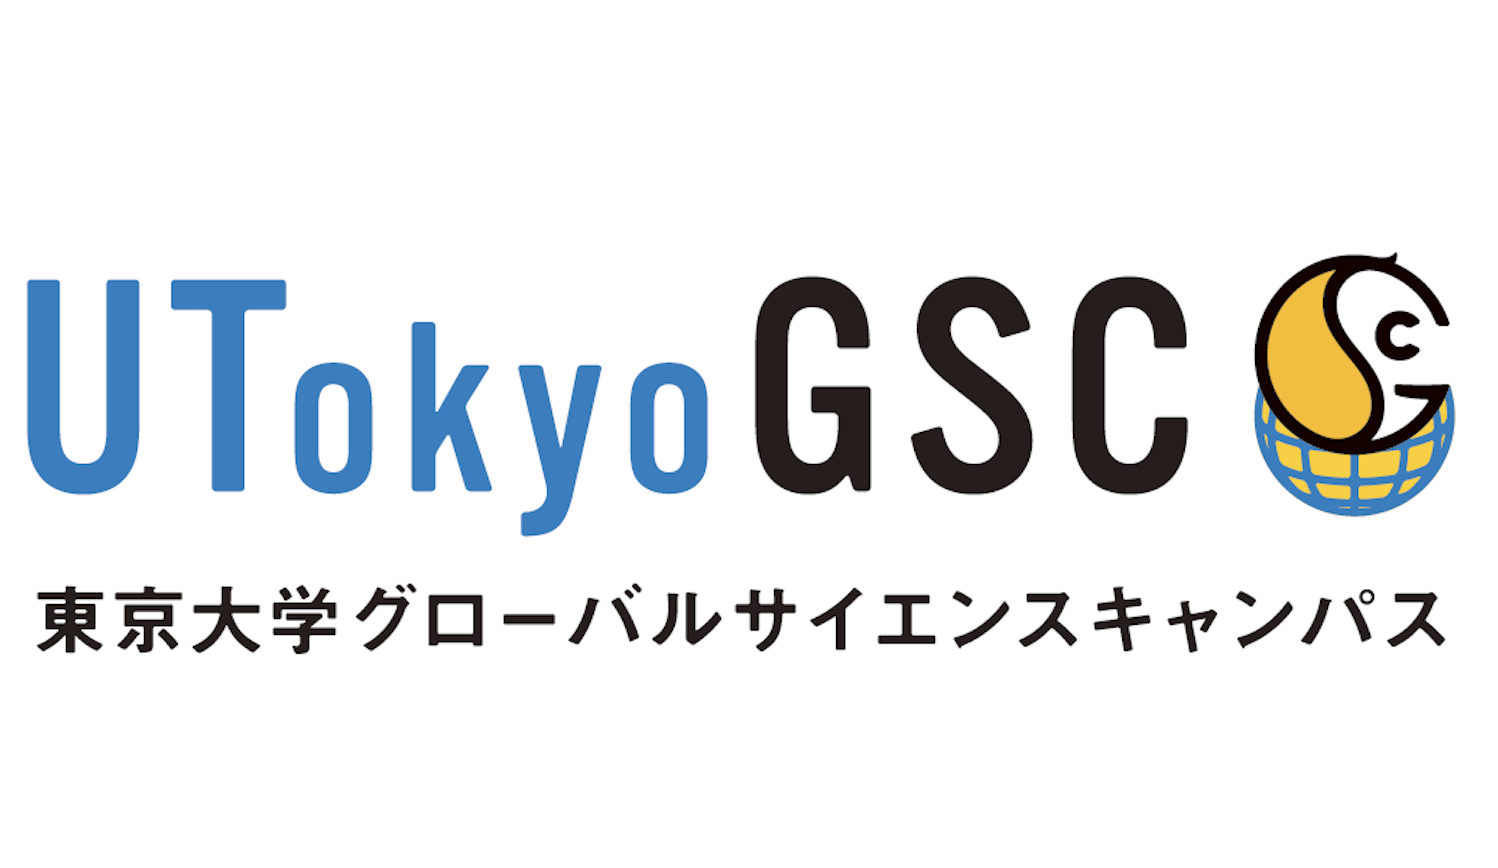 東京大学で研究活動をしてみたい高校生！ UTokyoGSCに参加してみませんか？ 【応募締切：6/30(火)】